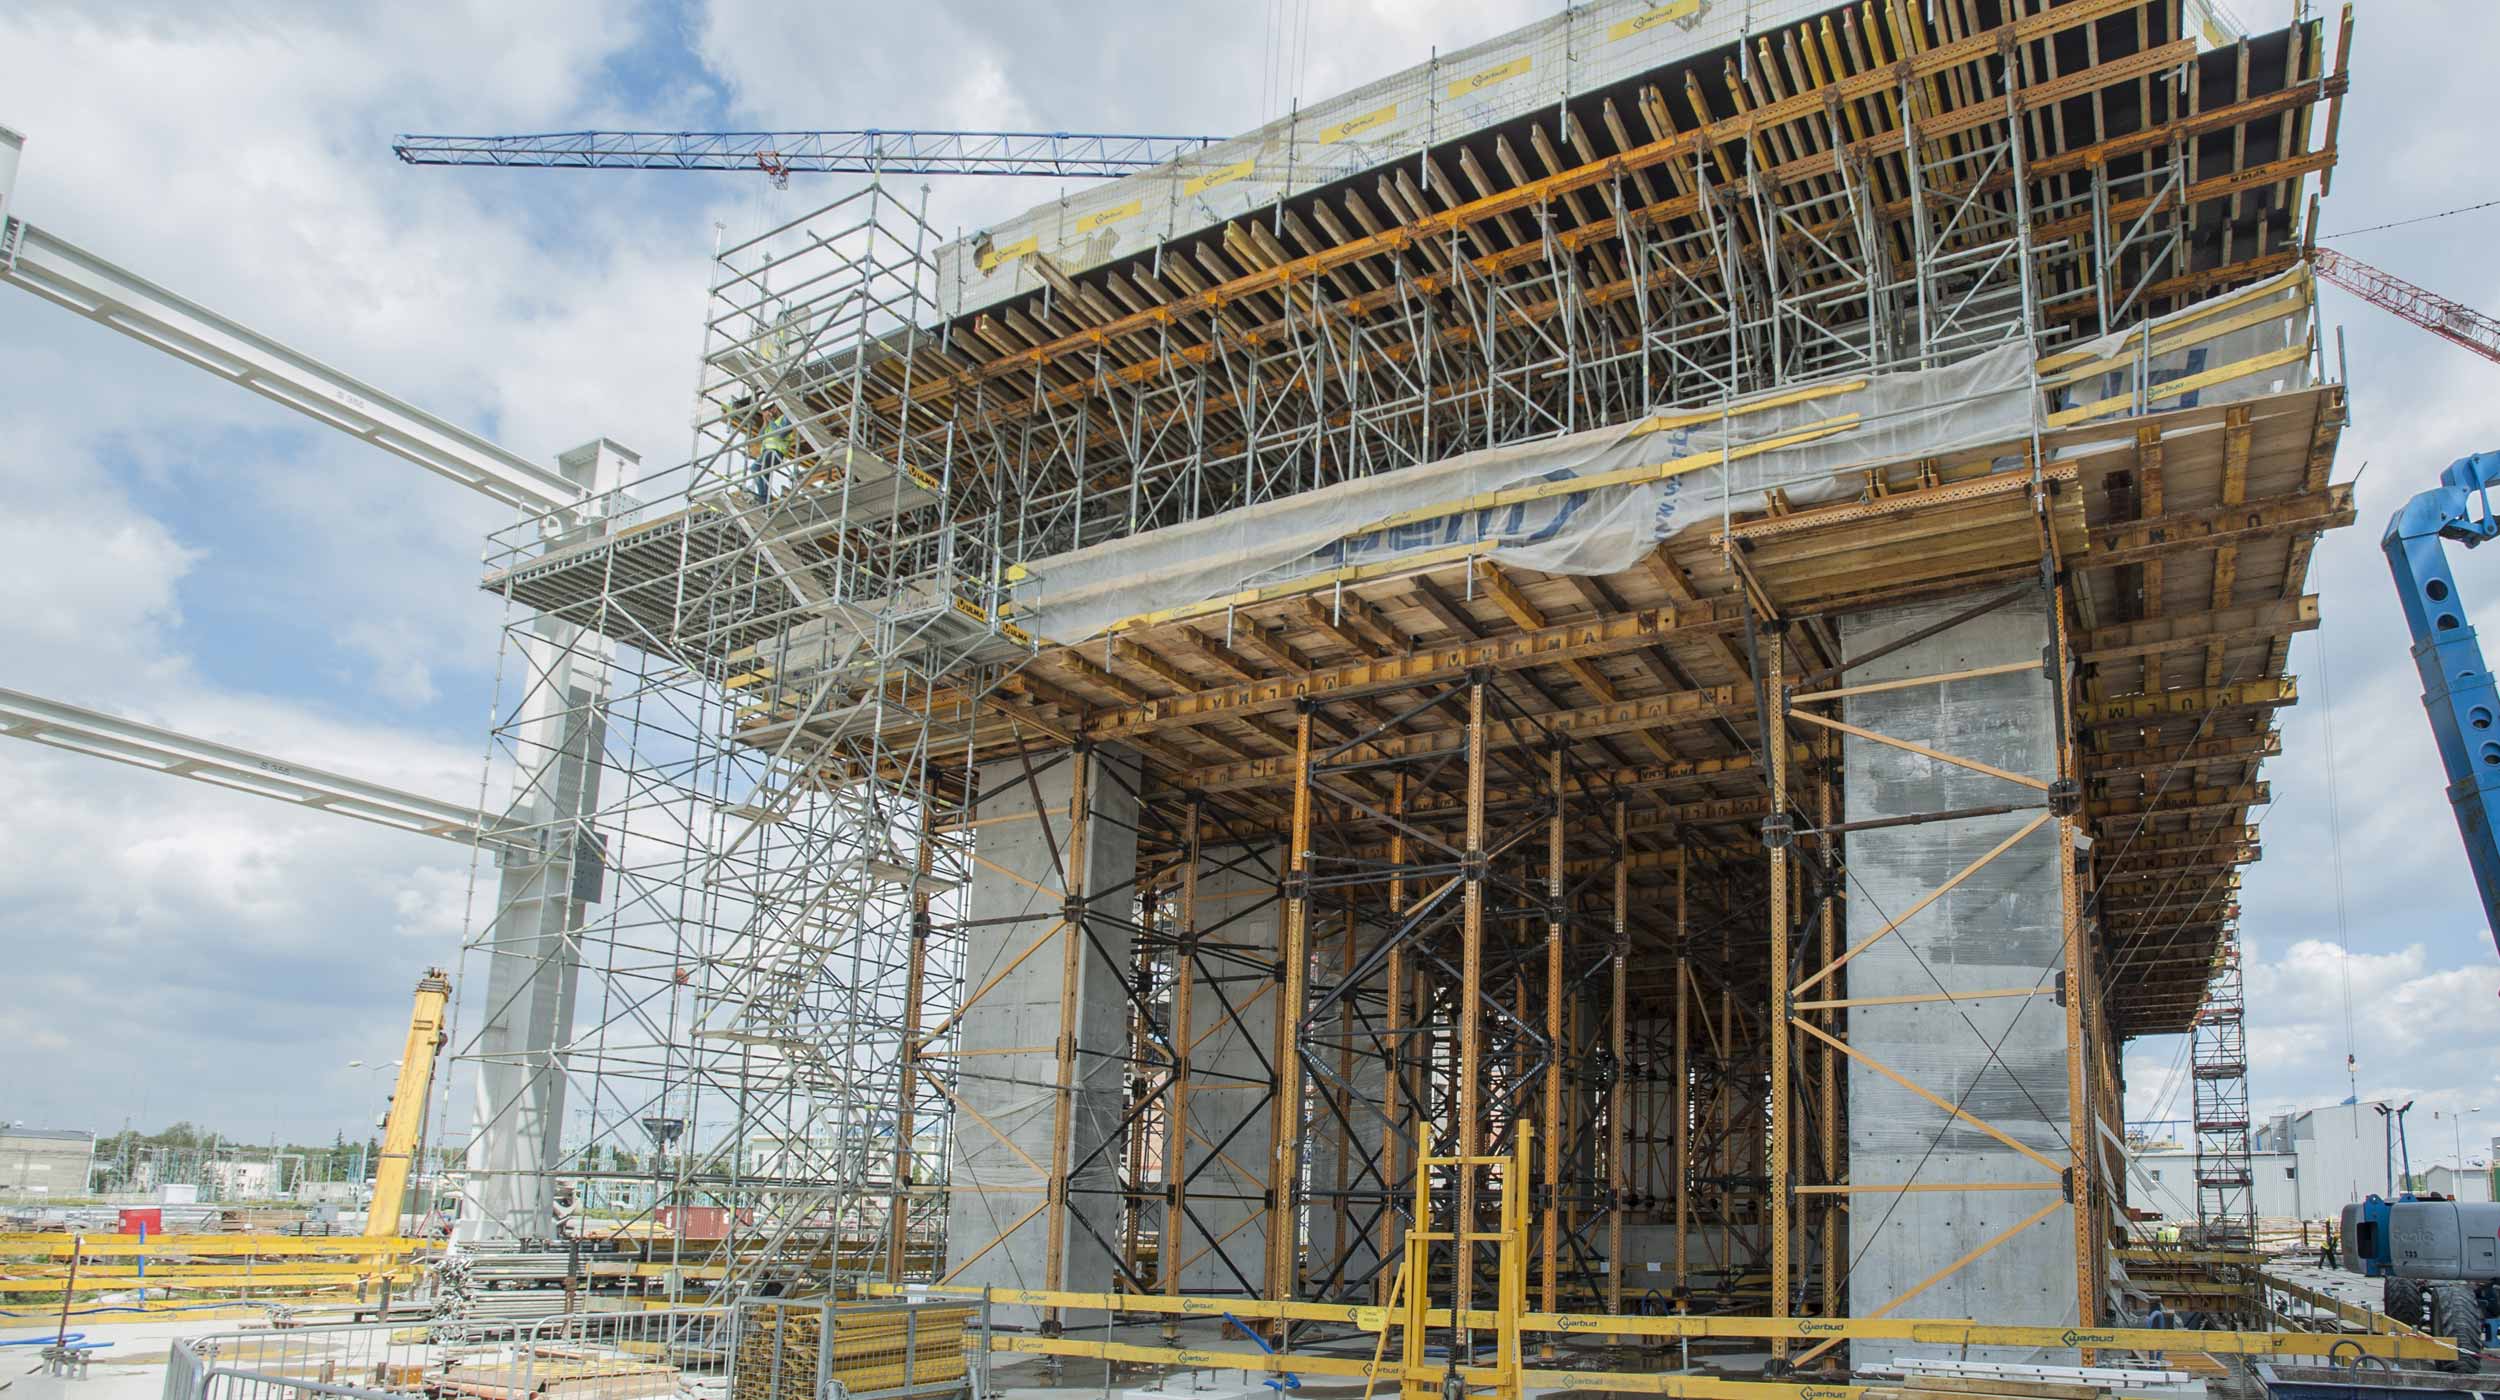 ULMA Construccion odpowiada za projekt i dostawę technologii deskowań i rusztowań na budowie oraz nadzór nad zaprojektowanymi rozwiązaniami.